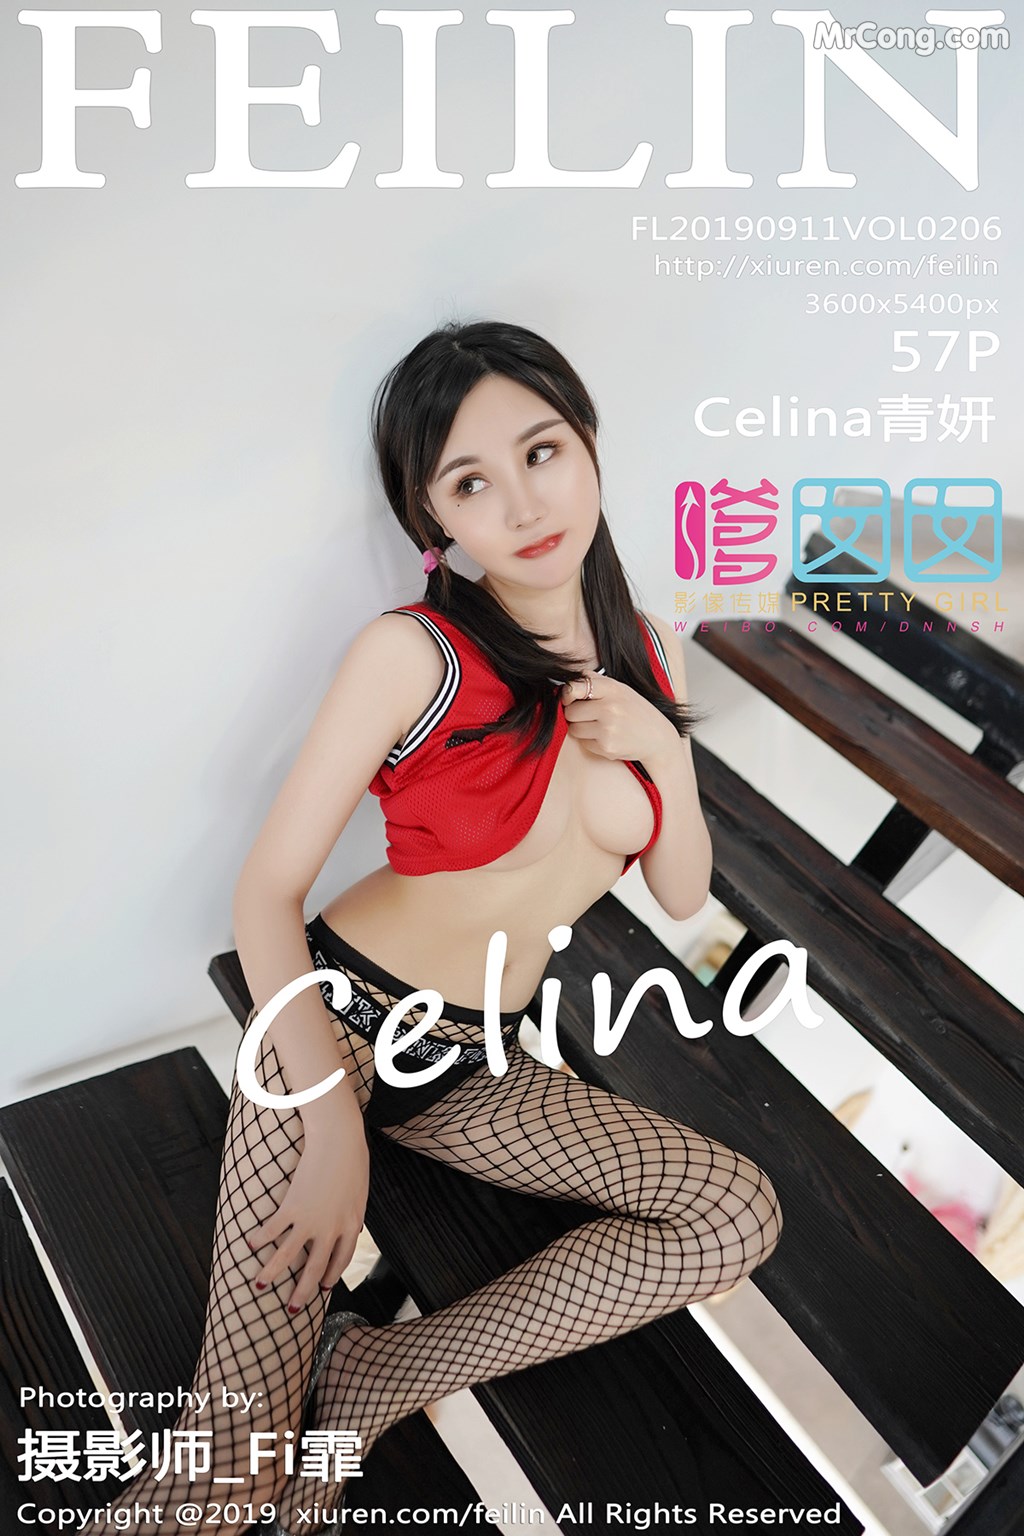 FEILIN Vol. 2006: Celina 青 妍 (58 pictures) photo 1-0